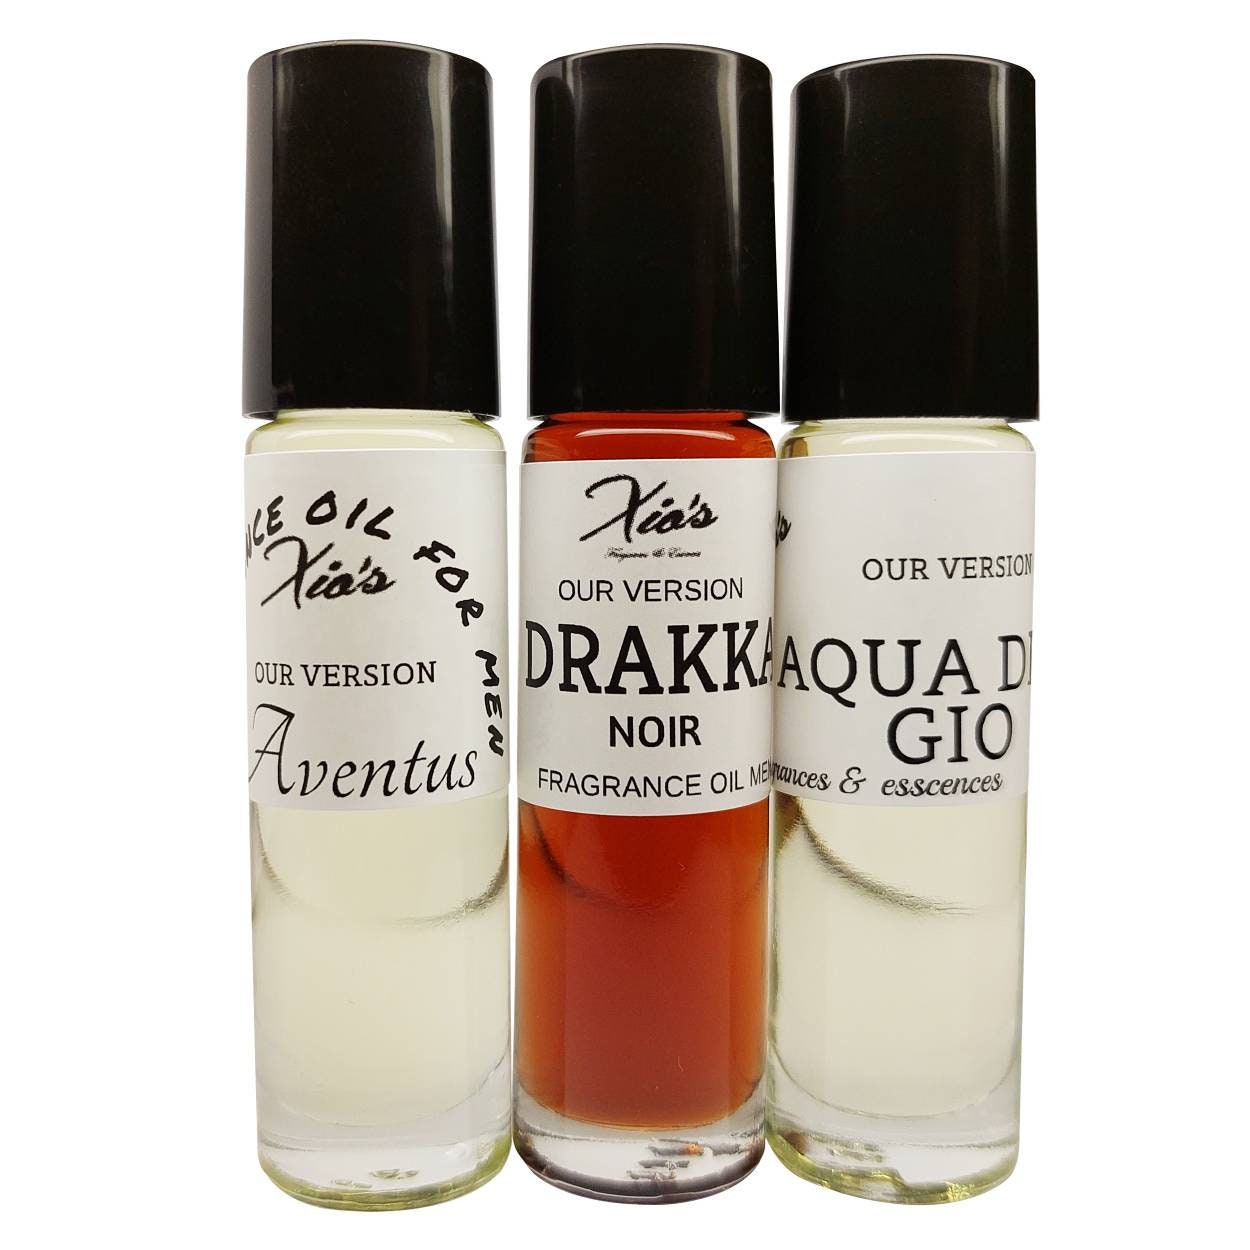 Perfume Similar to Acqua Di Gio  : Discover Sensational Alternatives